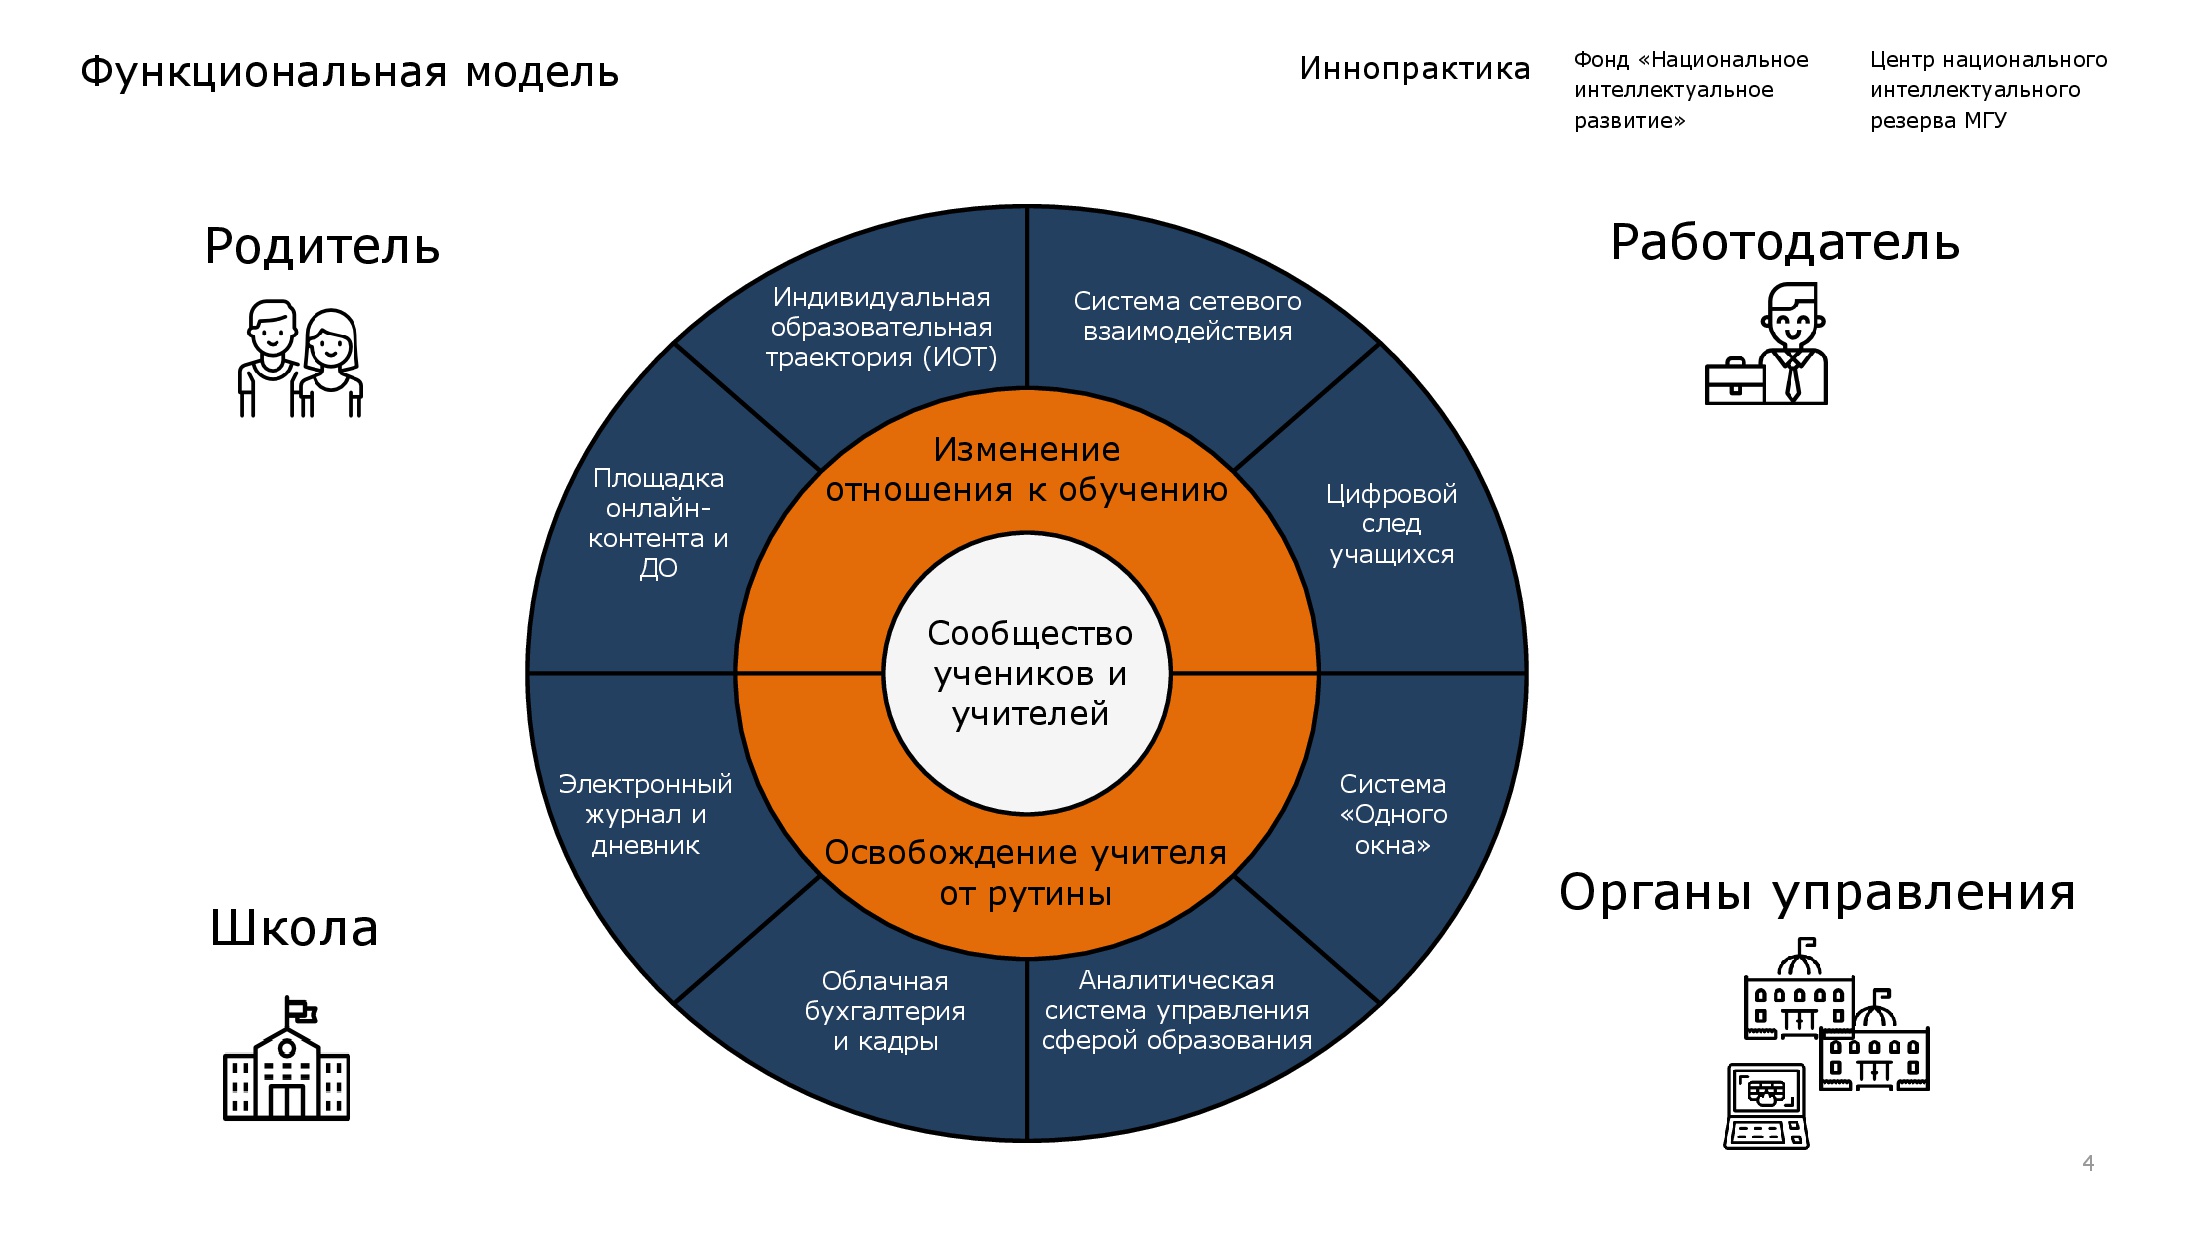 Региональная модель индивидуализации в образовании Пермского края.jpg